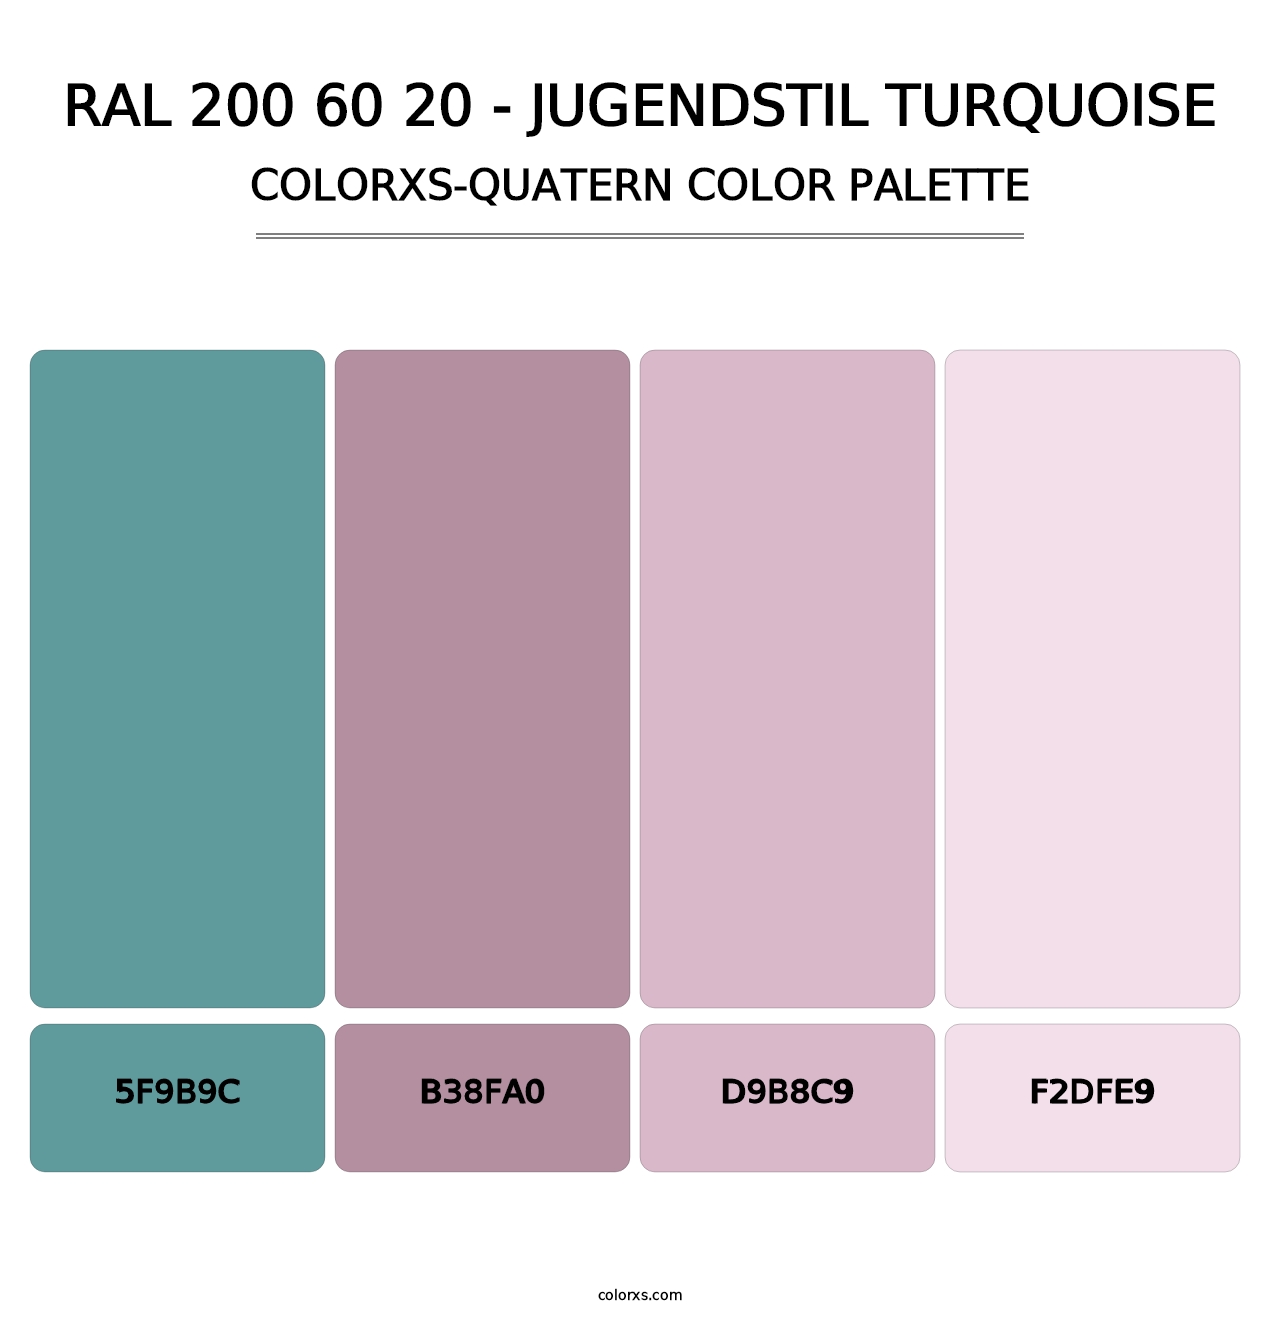 RAL 200 60 20 - Jugendstil Turquoise - Colorxs Quatern Palette